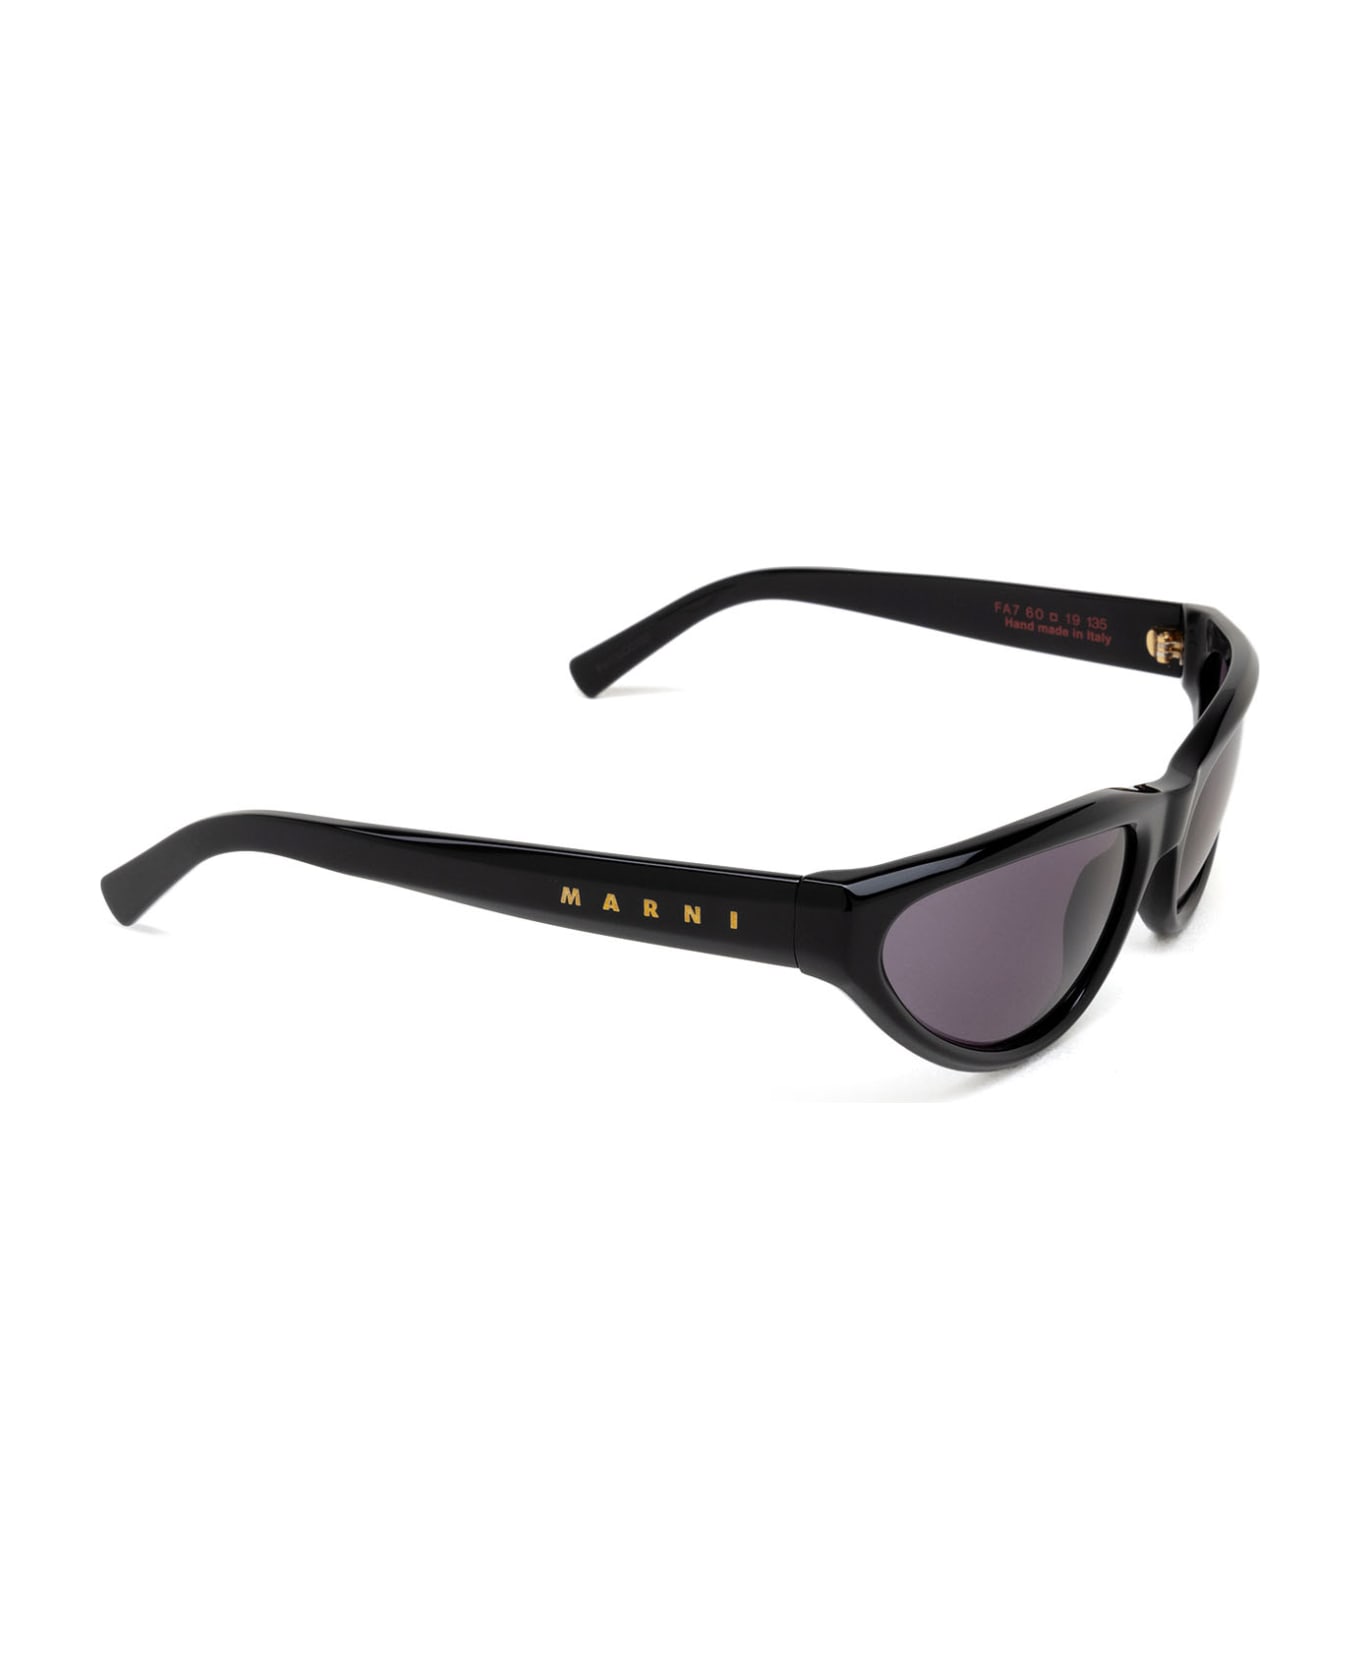 Marni Eyewear Mavericks Black Sunglasses - Black